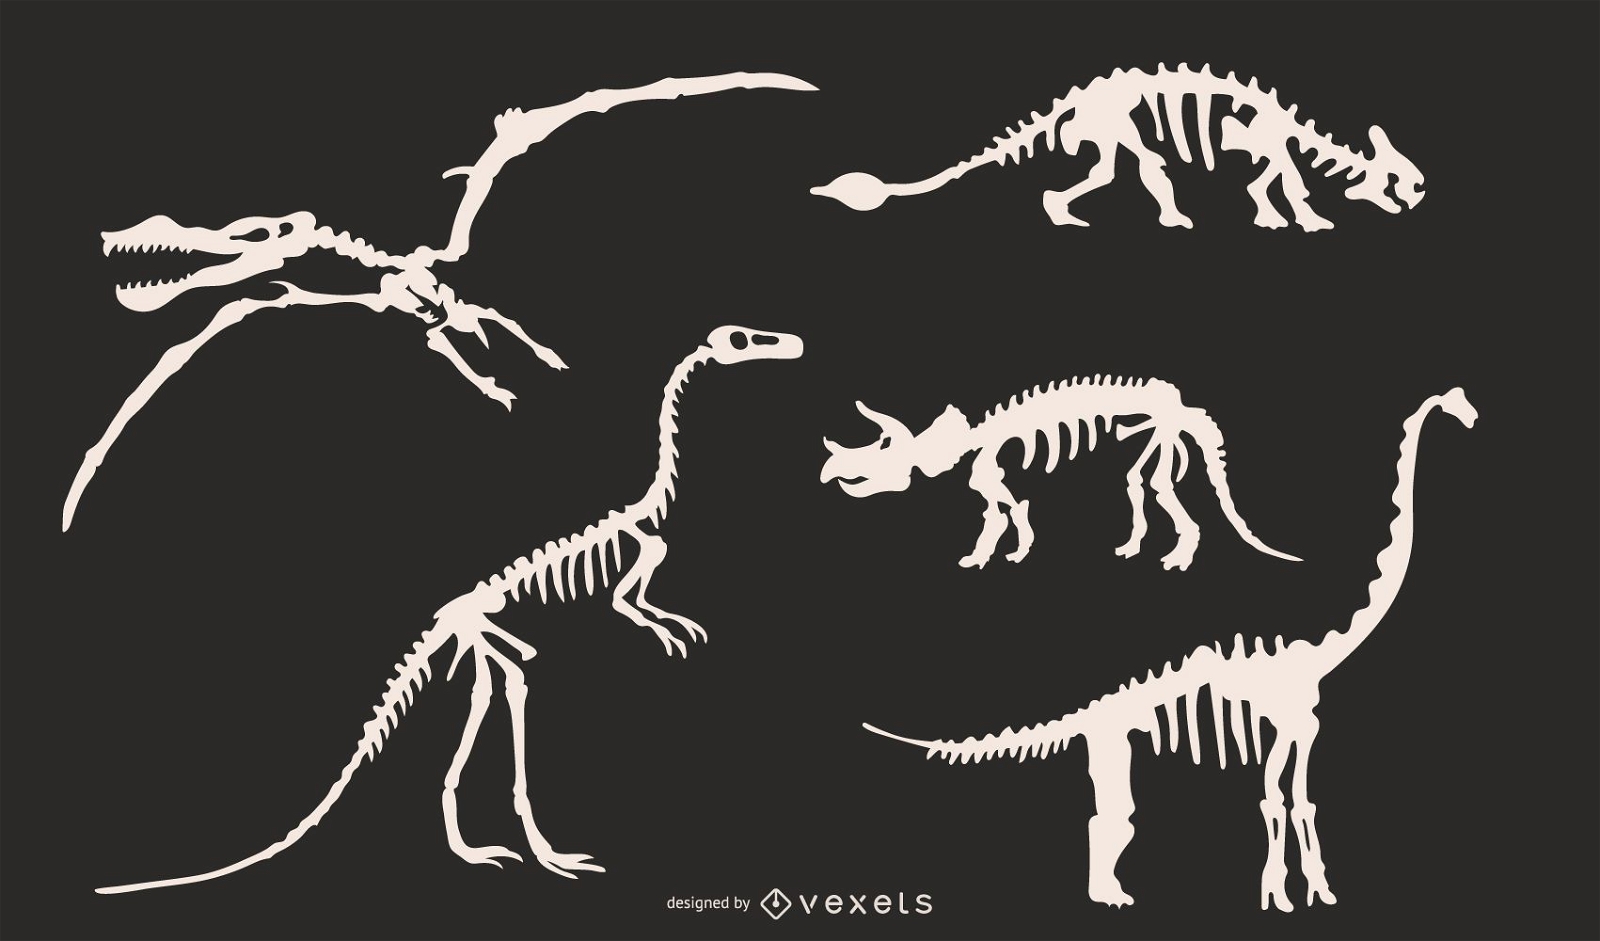 Dinosaur skeleton silhouettes set